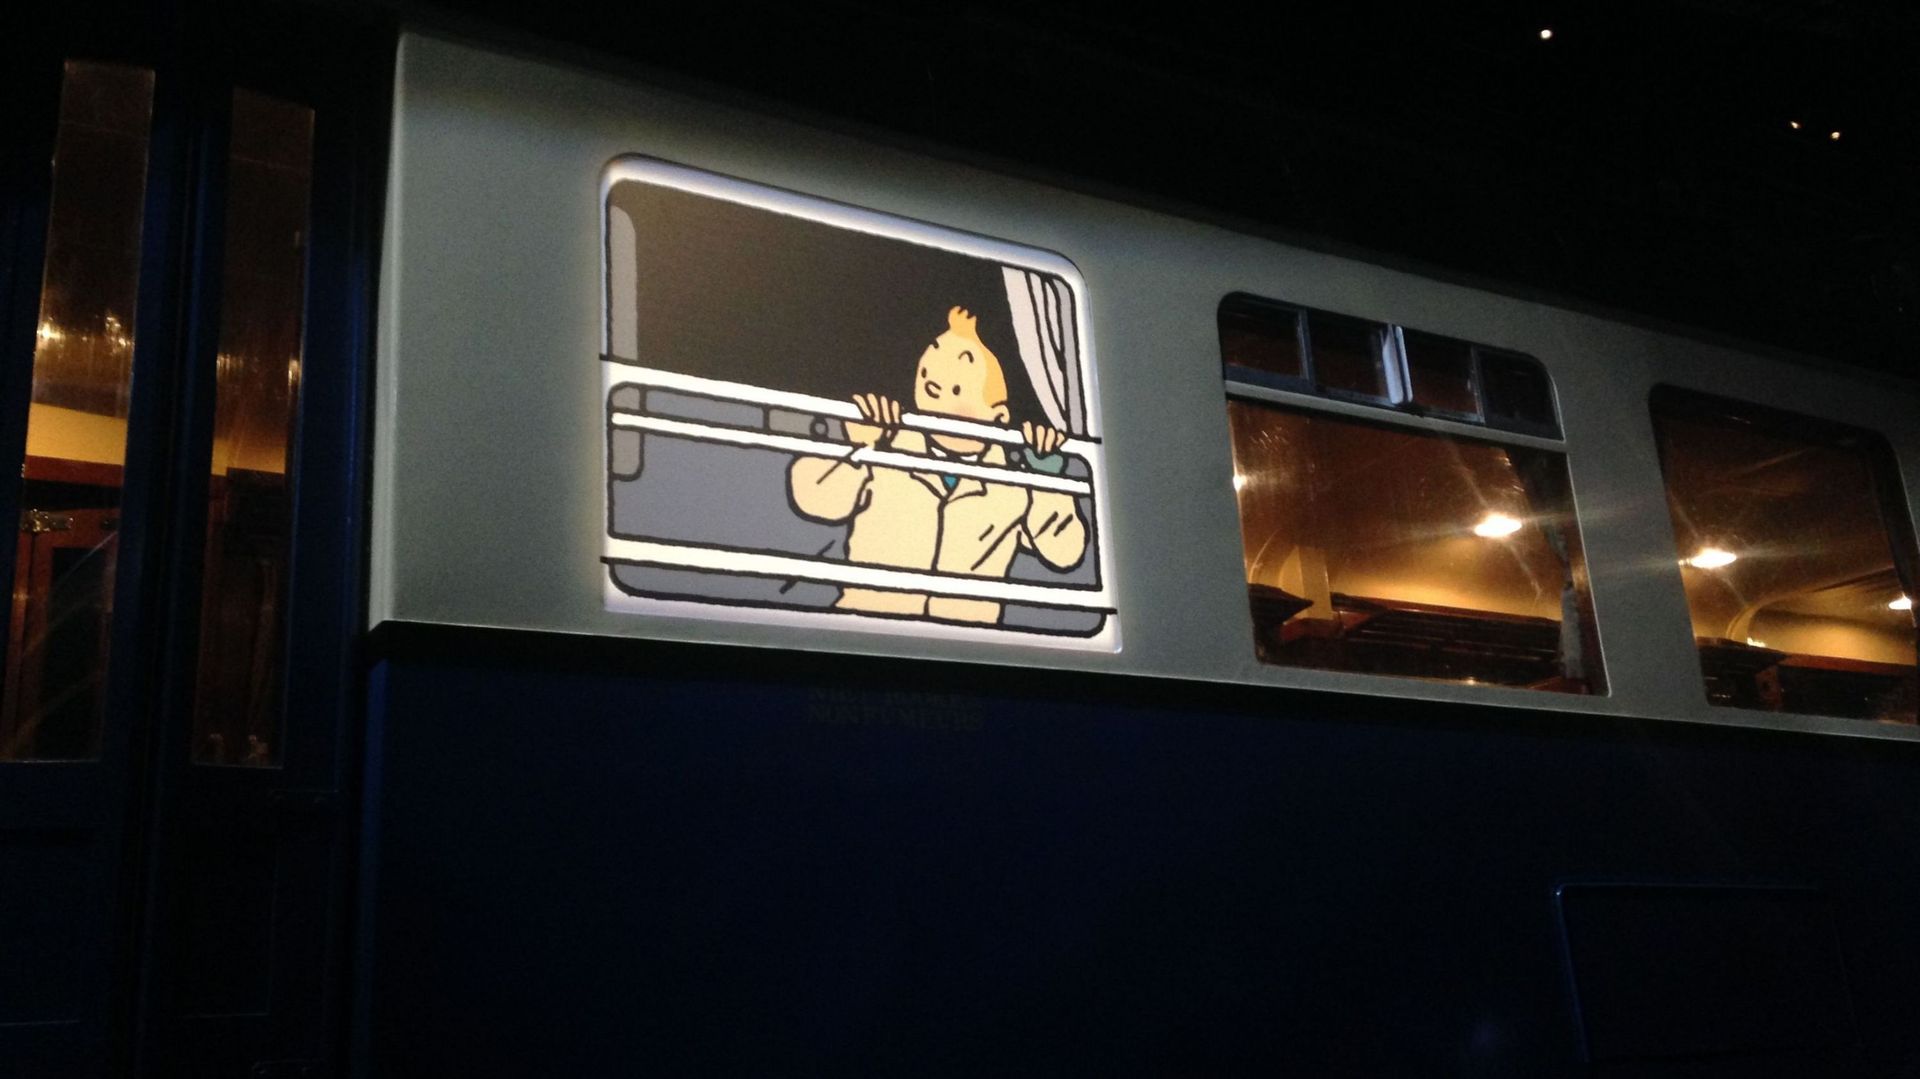 Les histoires de Tintin en relation avec l'univers ferroviaire sont présentées au Musée Train World.